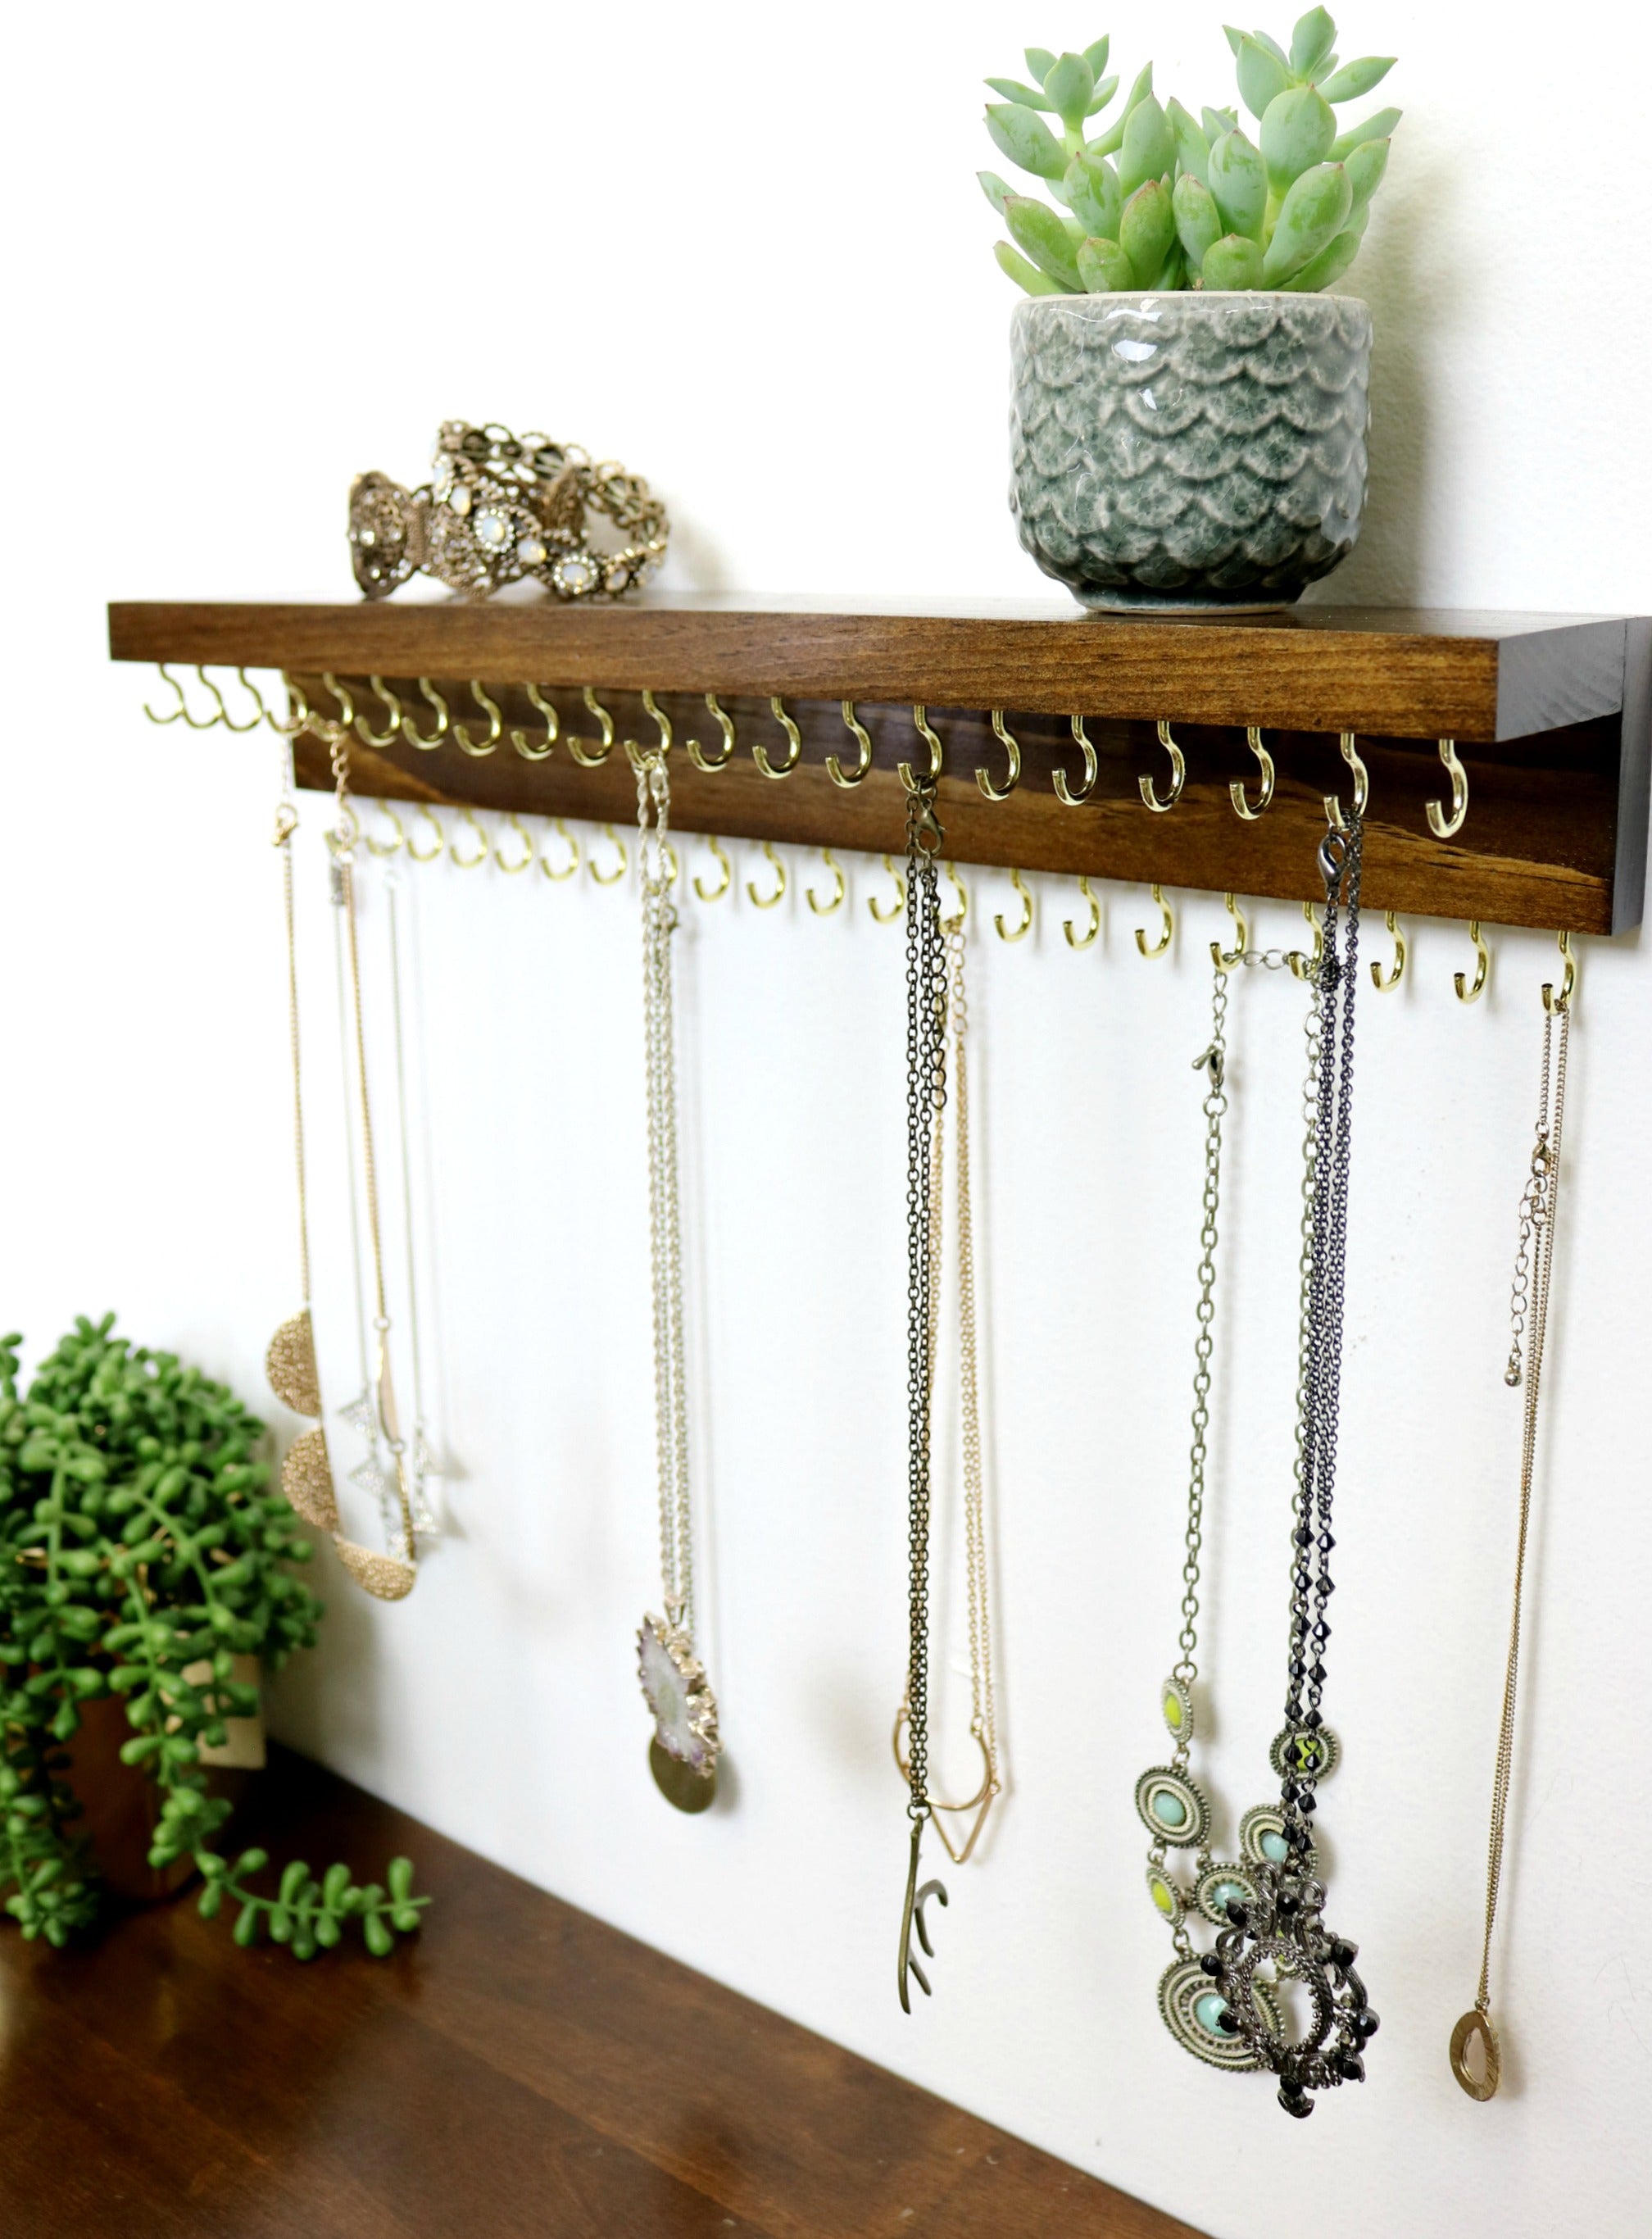 Jewelry Organizer With Shelf | Necklace Holder